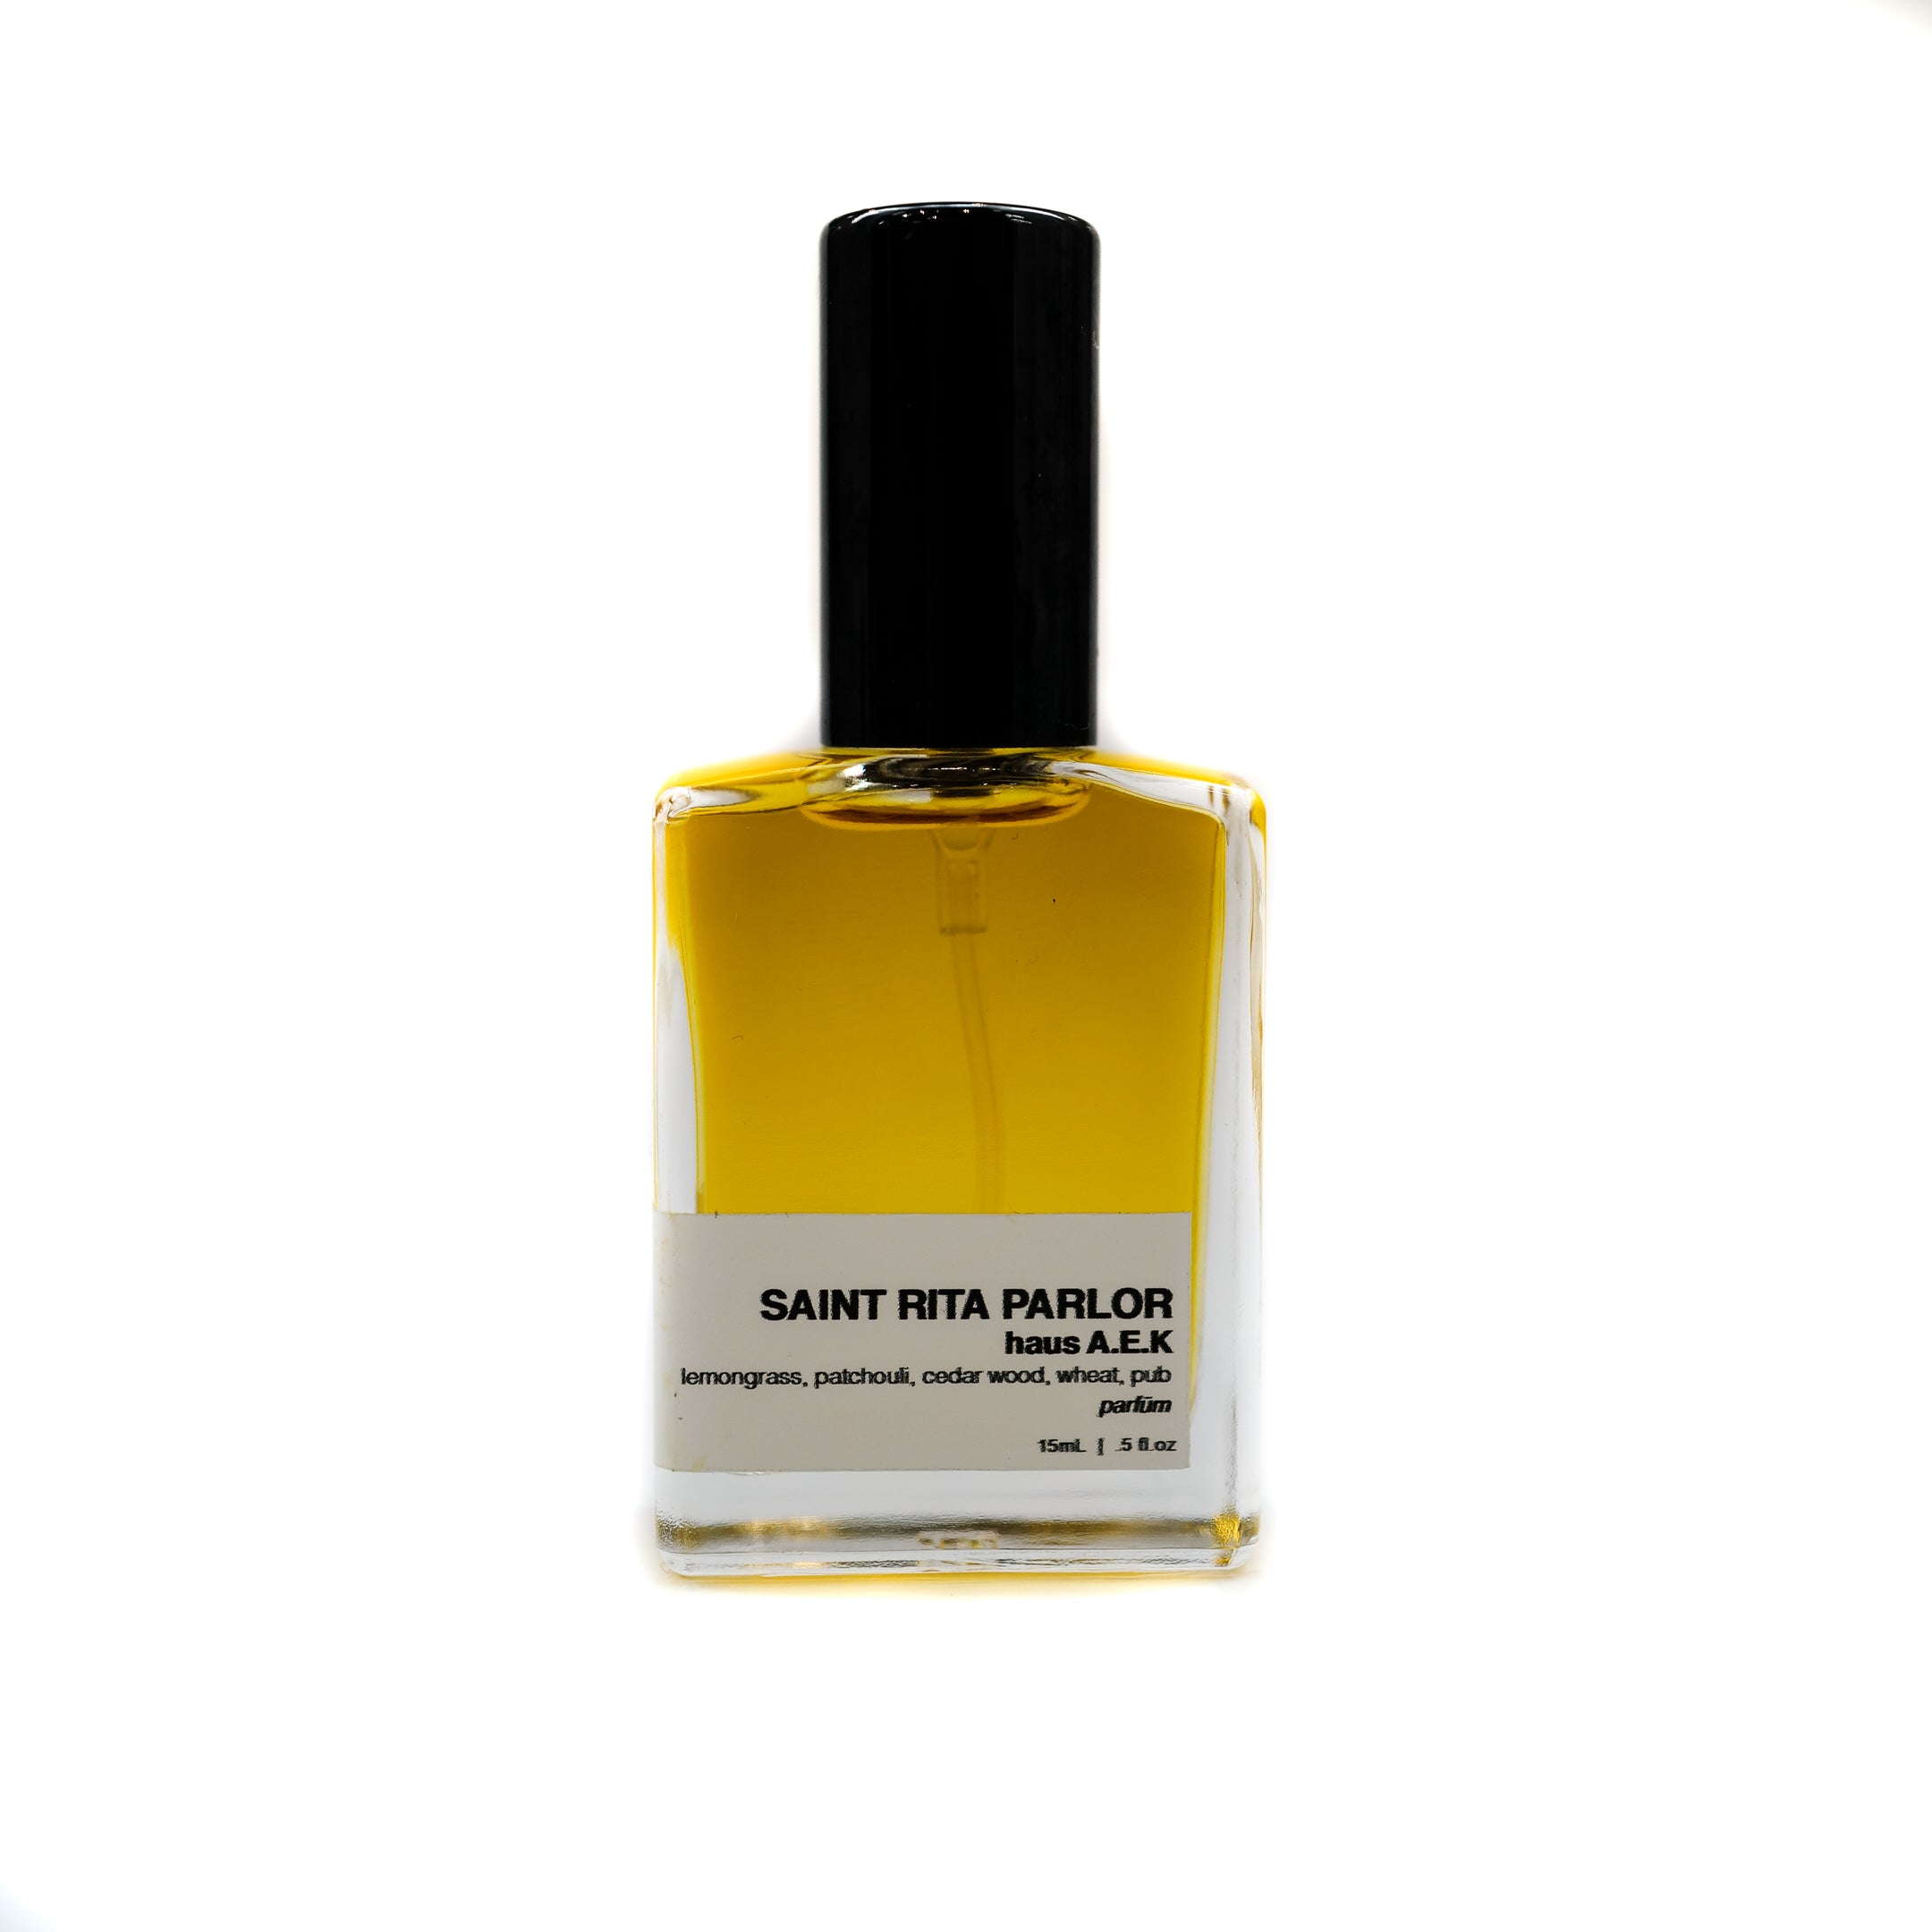 Saint Rita Parlor - Parfum | Haus A.E.K | 15 mL